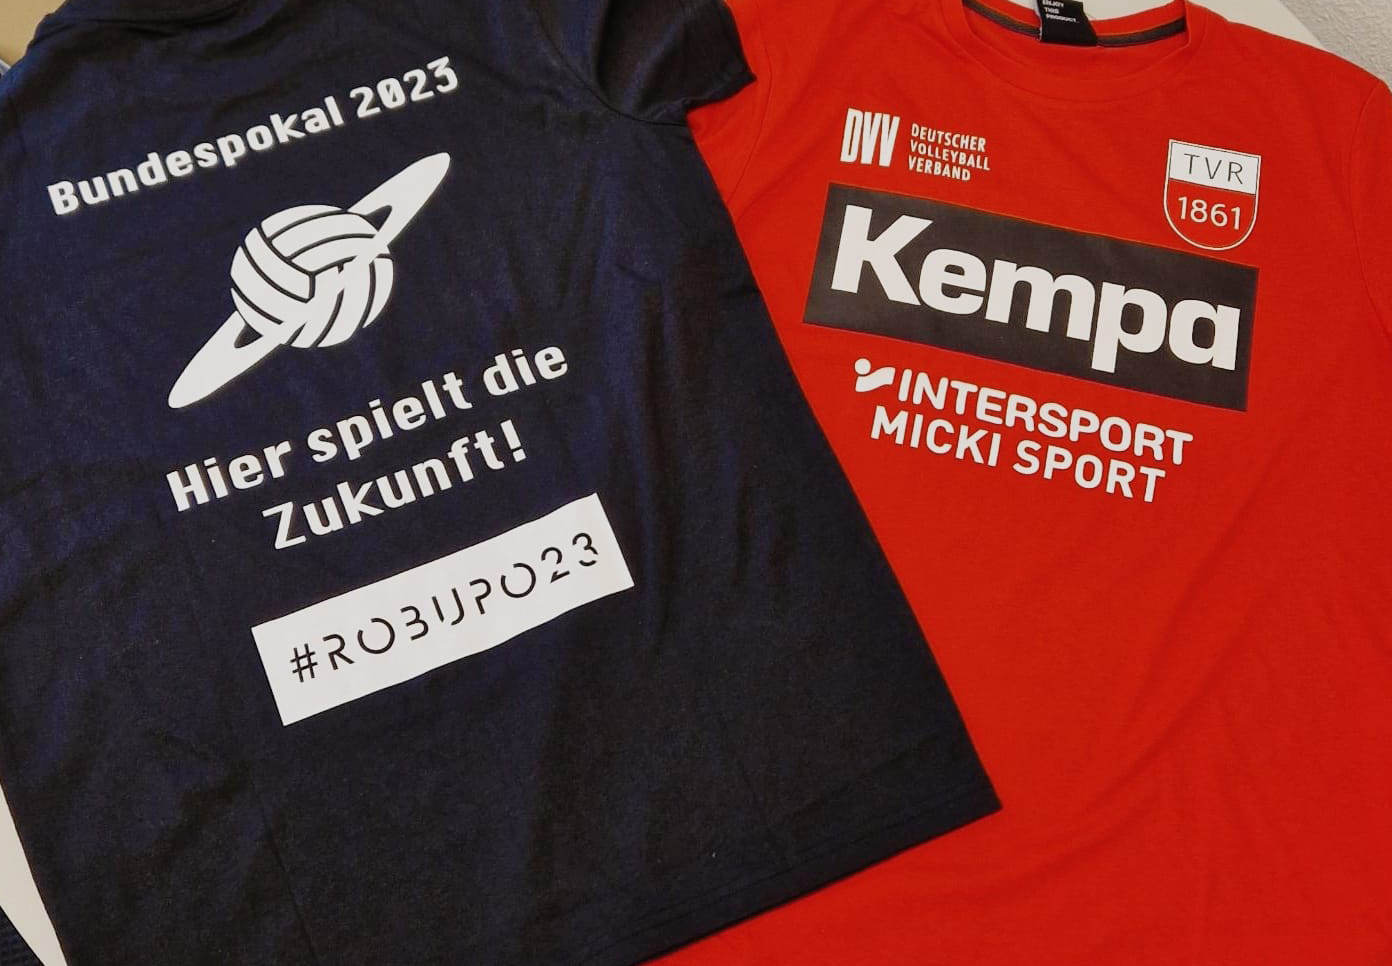 Kleider machen Sportler: Kempa und Micki Sport sind Ausrüster des Bundespokals